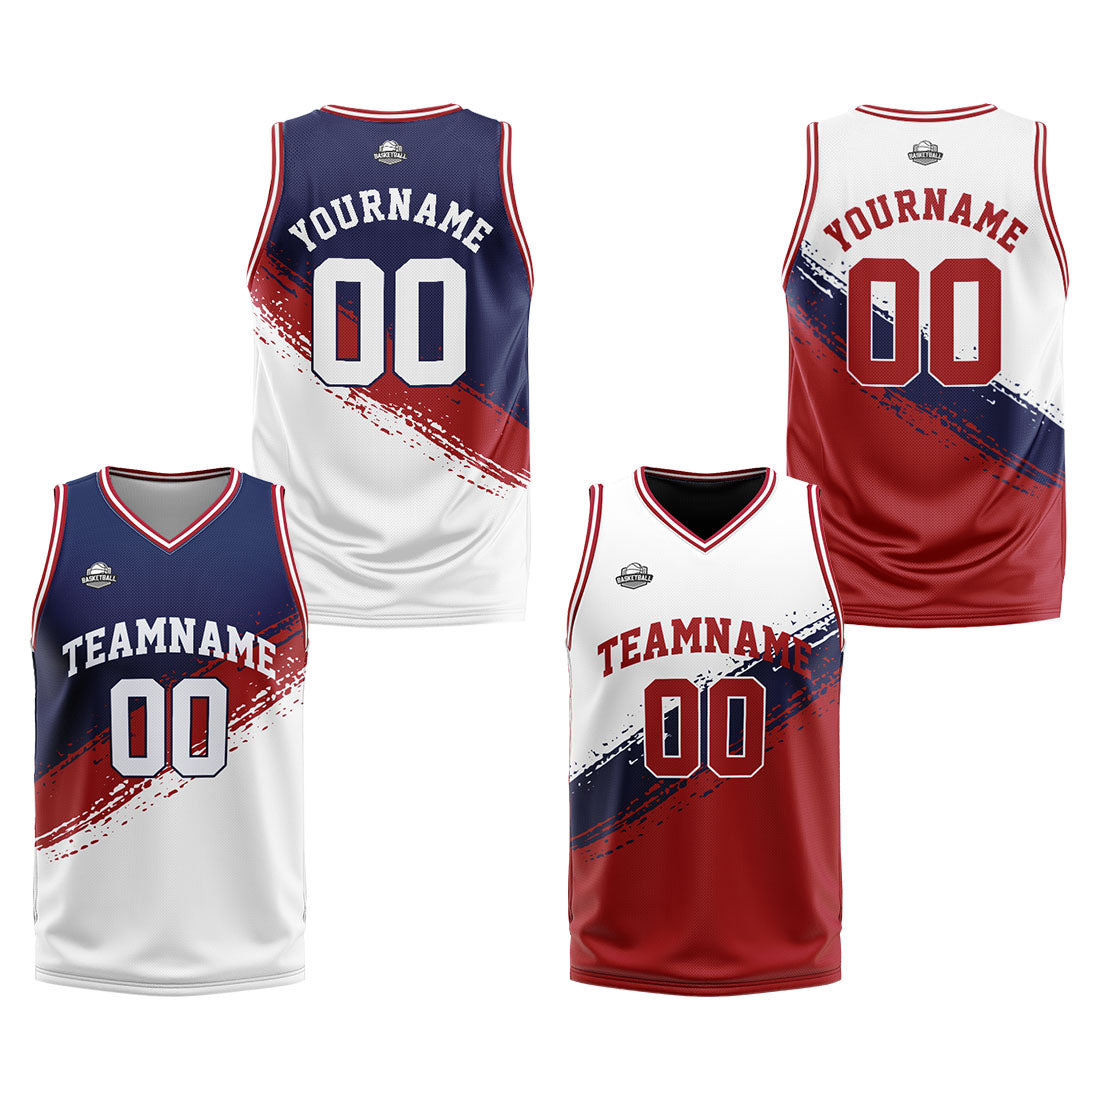 Benutzerdefinierte Reversible Basketball Jersey Personalisierte Print Name Nummer Logo Marine -Rot-Weiß